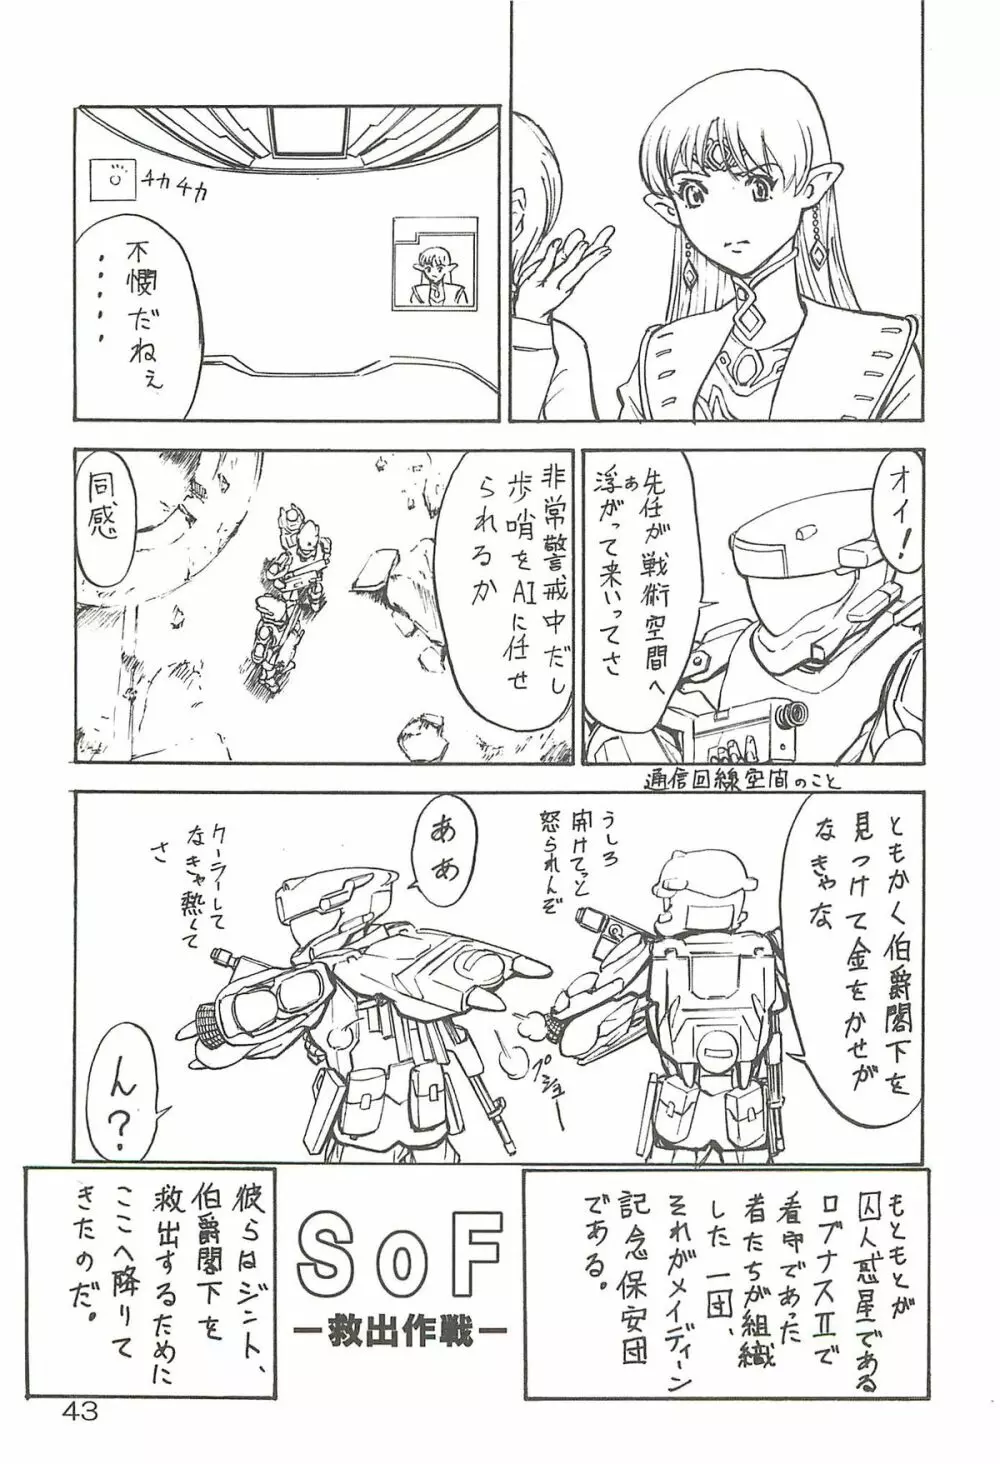 追放覚悟 Special edition Phase1 - page42